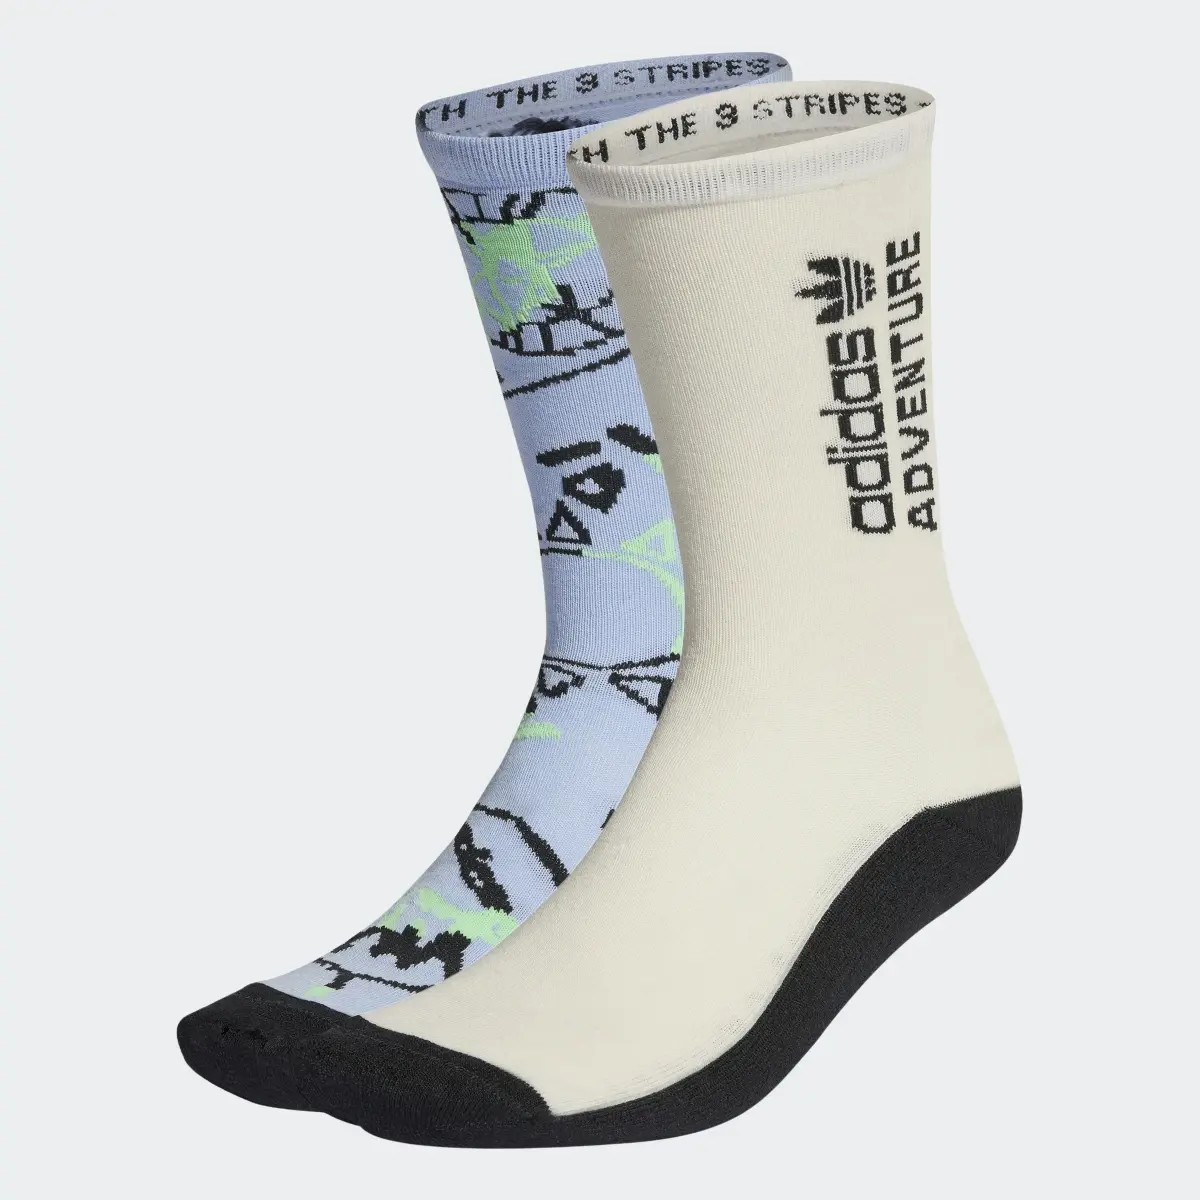 Adidas Adventure Socken, 2 Paar. 1